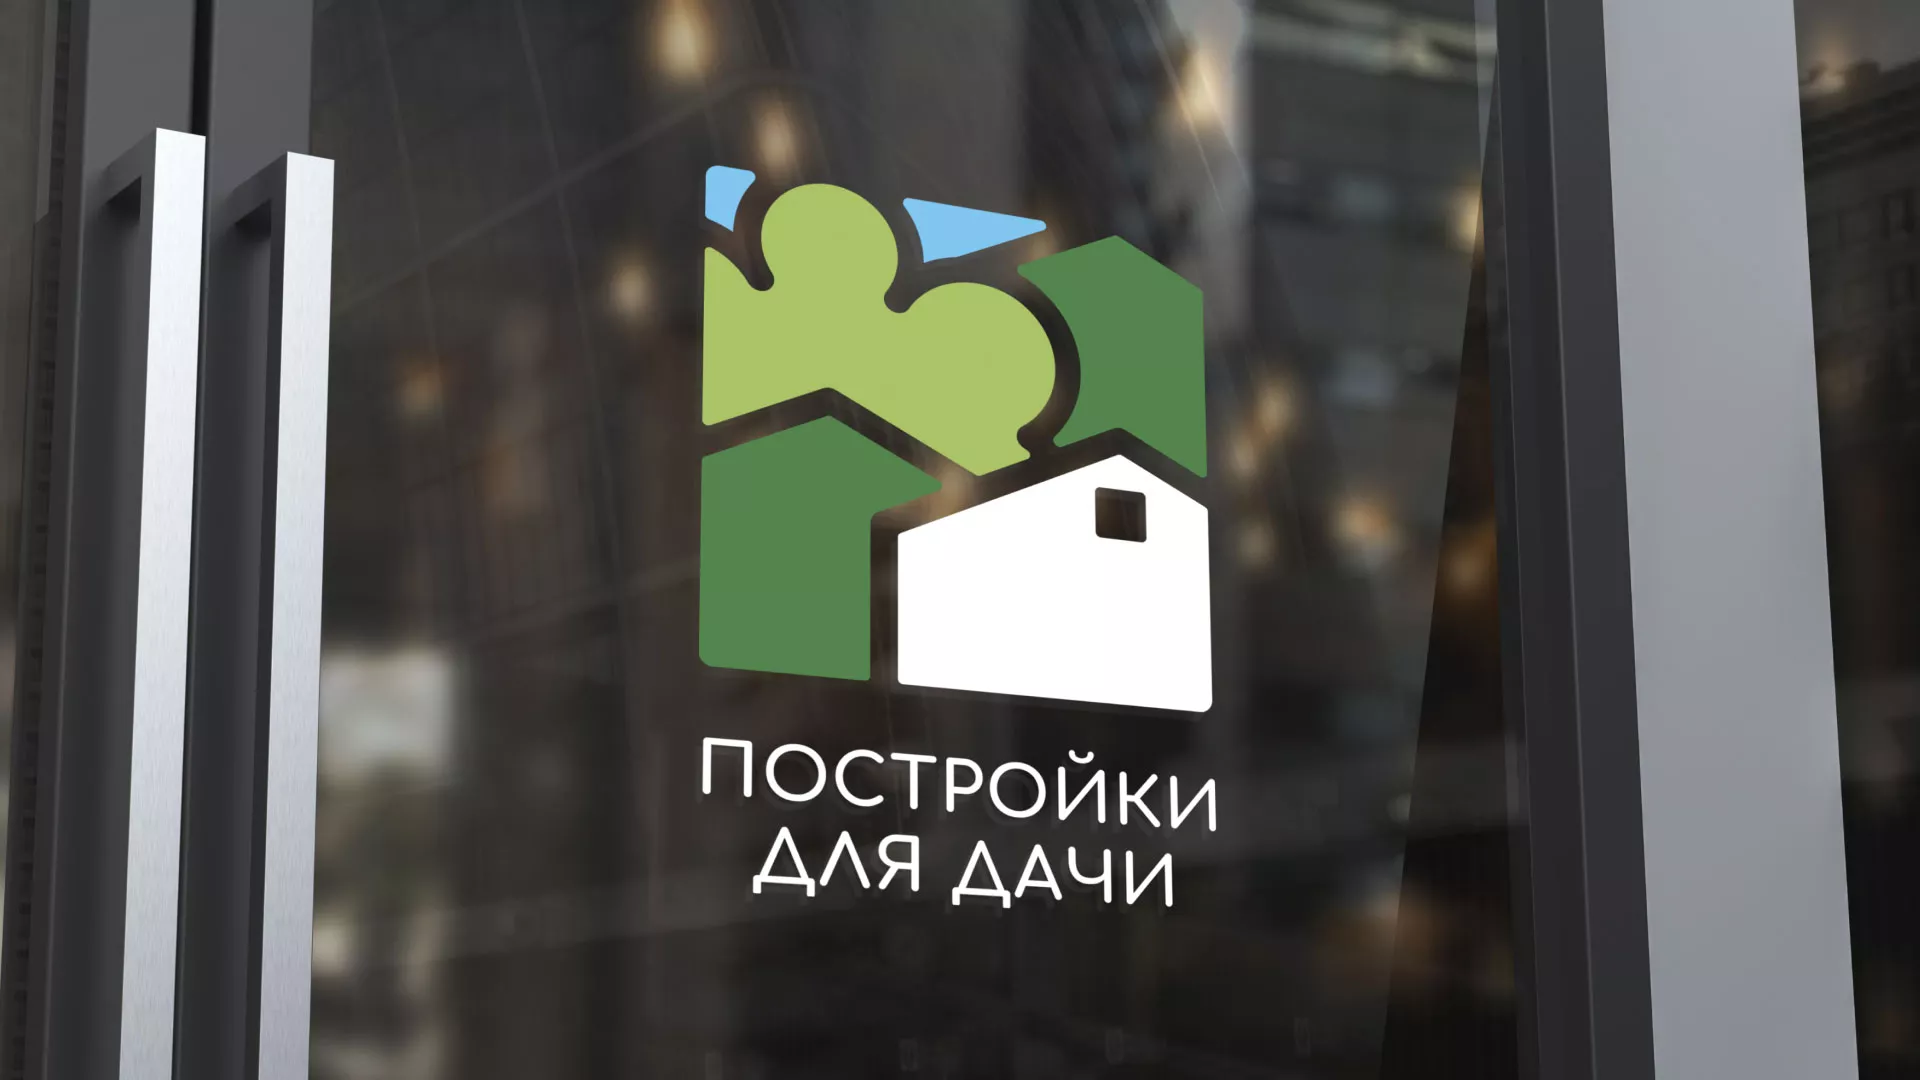 Разработка логотипа в Далматово для компании «Постройки для дачи»